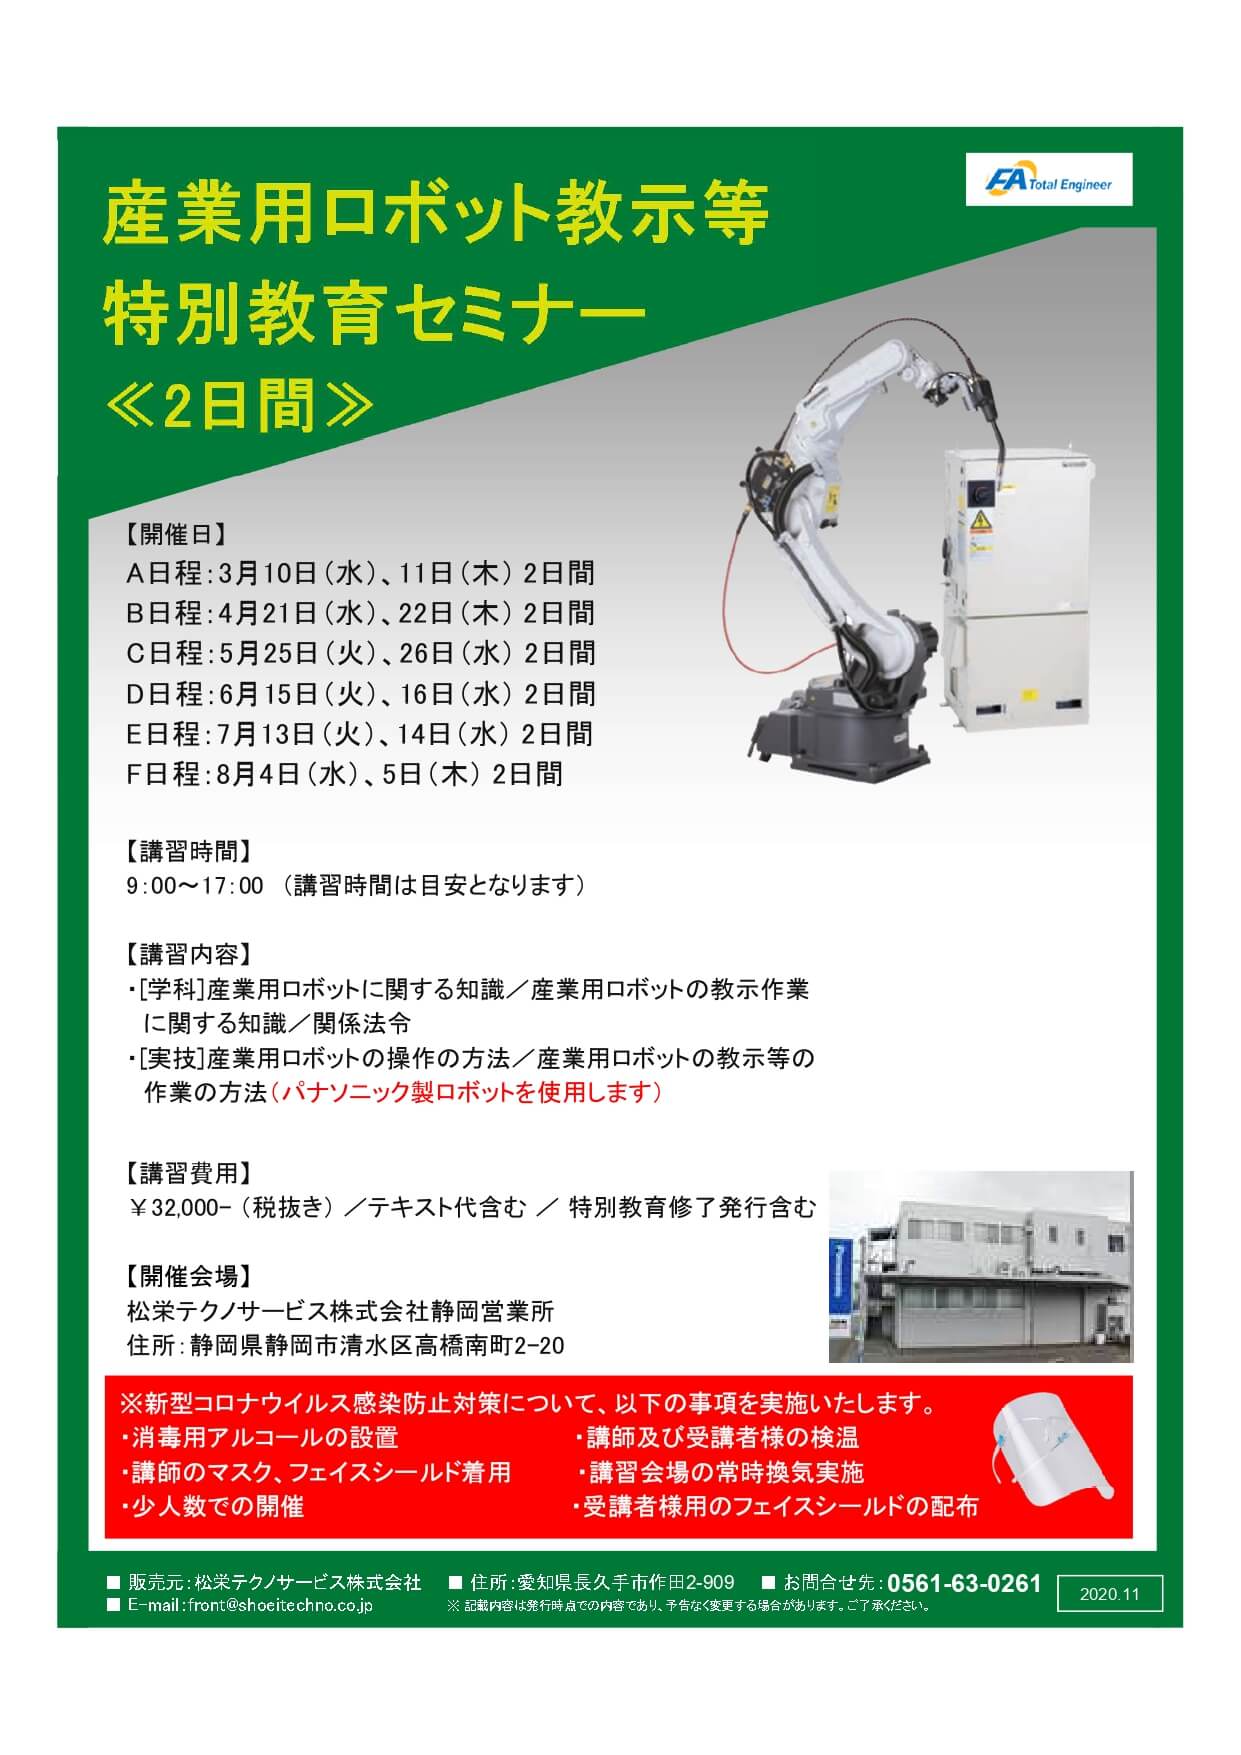 【終了しました】産業用ロボット特別教育（教示等）静岡会場開催のお知らせ